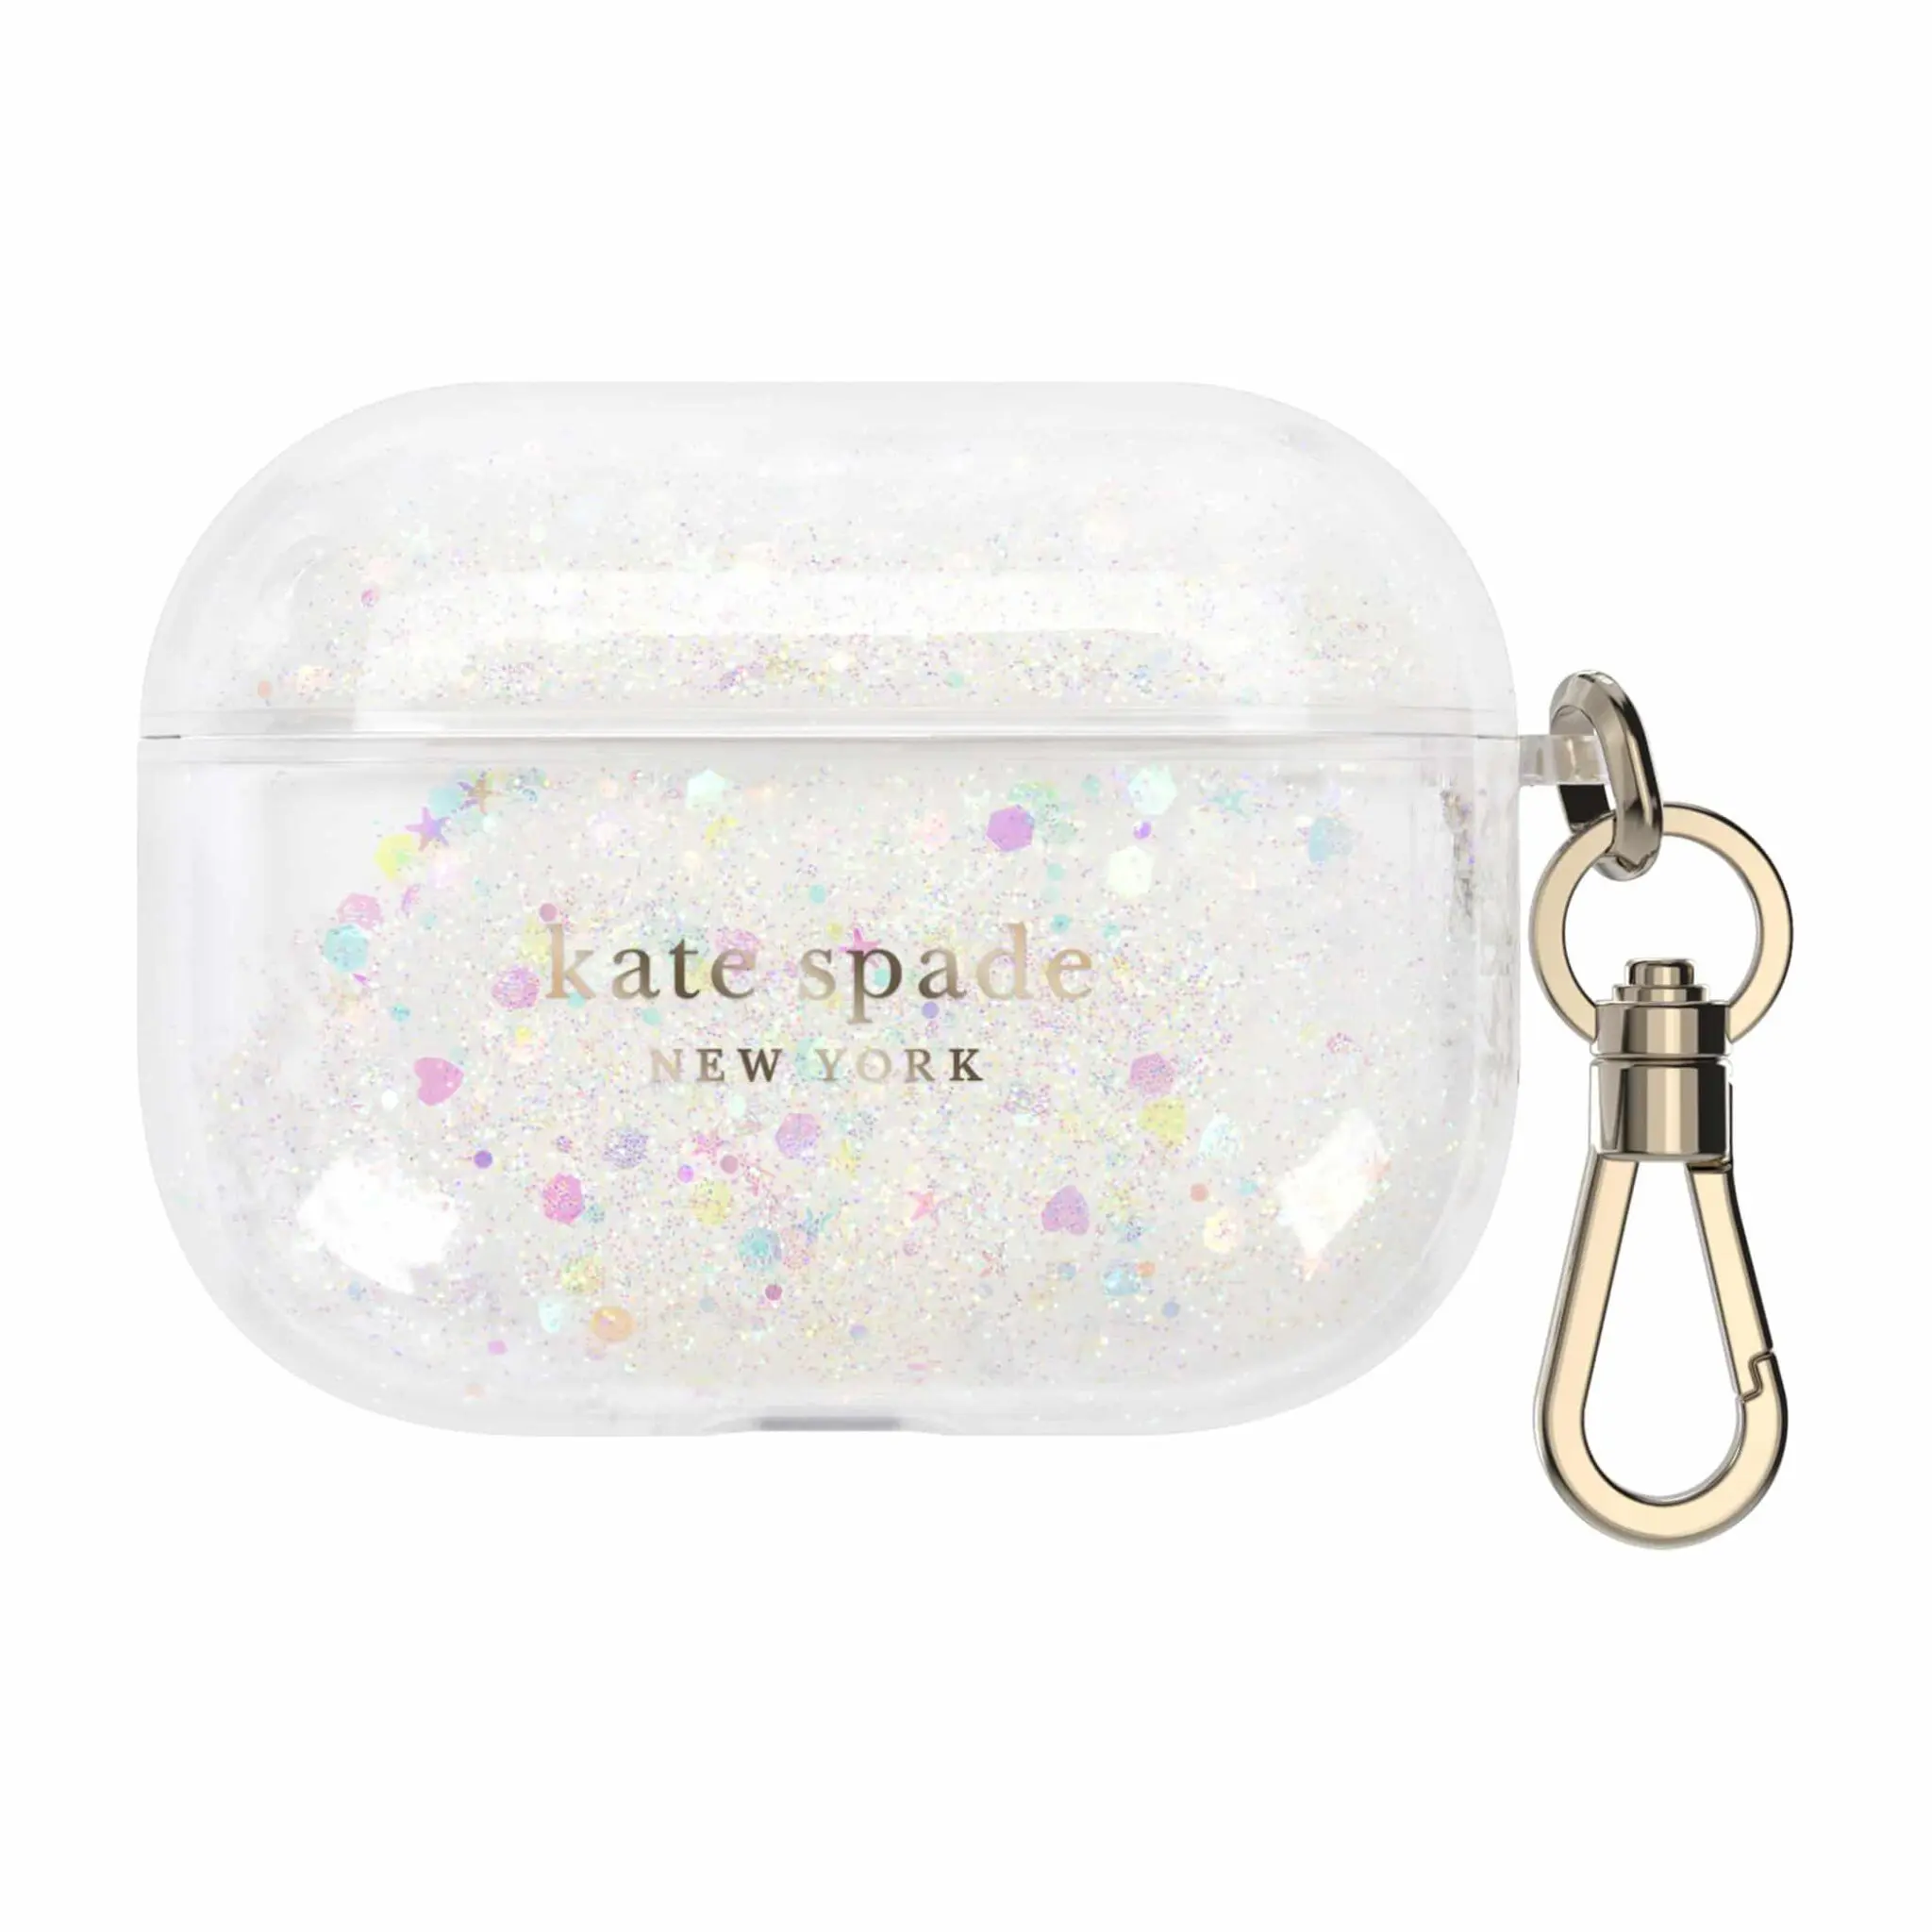 เคส Kate Spade New York รุ่น Liquid Glitter - Airpods Pro - สี White/Clear